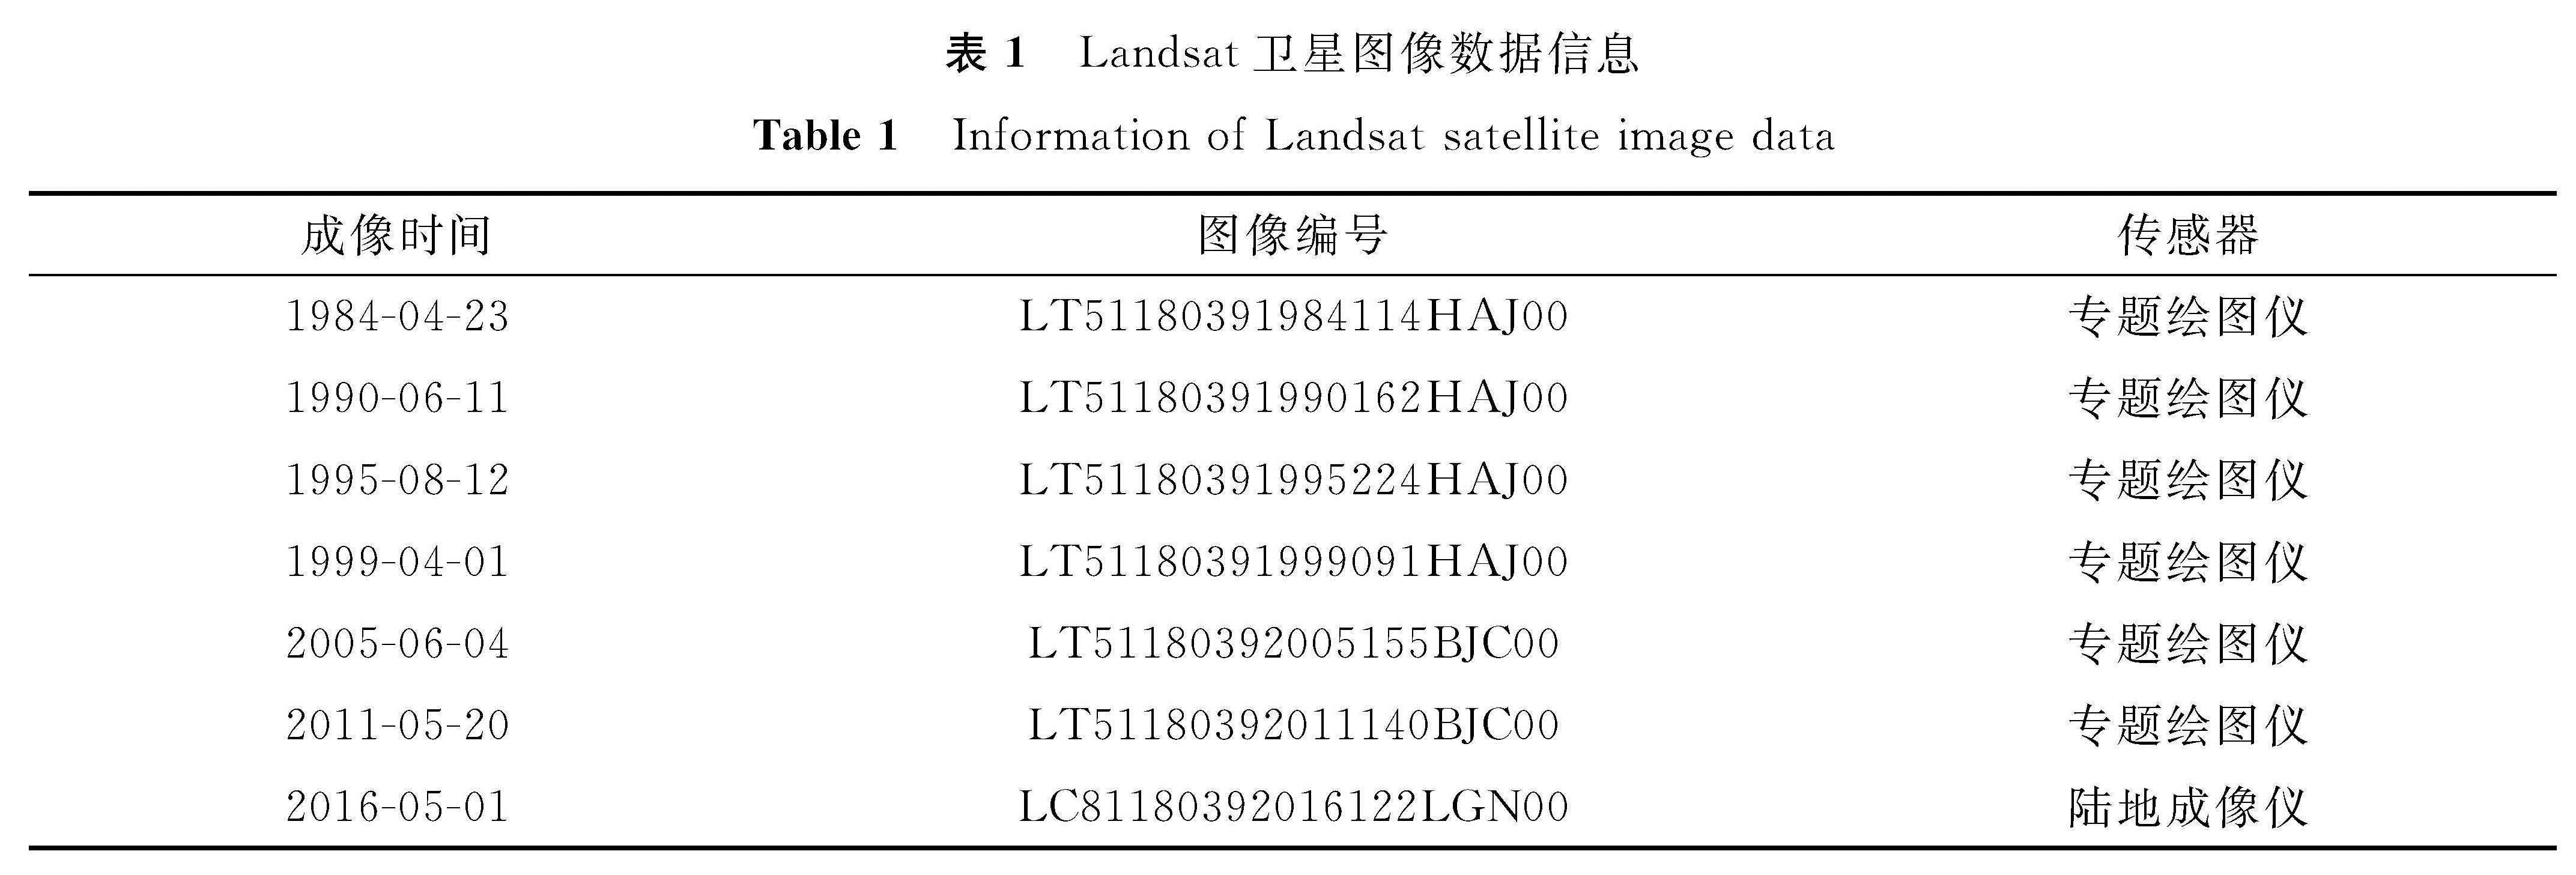 表1 Landsat卫星图像数据信息<br/>Table 1 Information of Landsat satellite image data